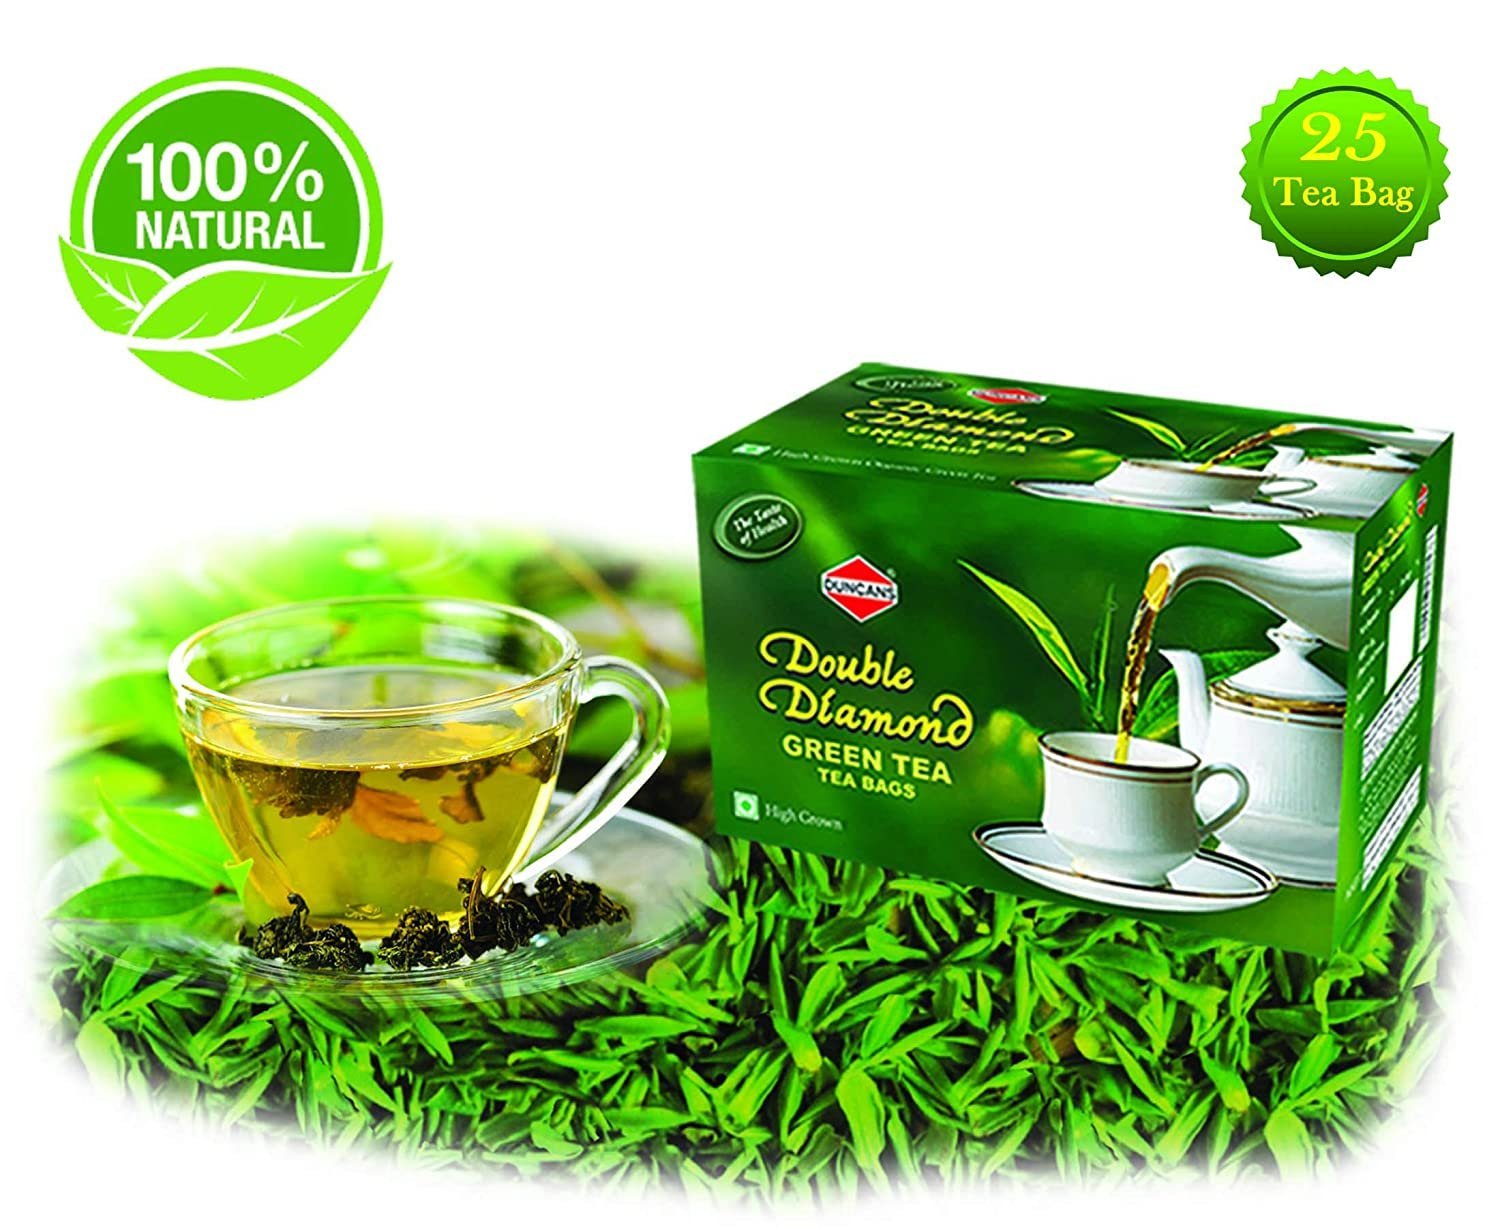 Черный чай в зеленой упаковке. Чай в зеленой упаковке. Чай зеленый в салатовой упаковке. Чай на зелёном фоне. Зеленый чай в белой упаковке с зеленым.